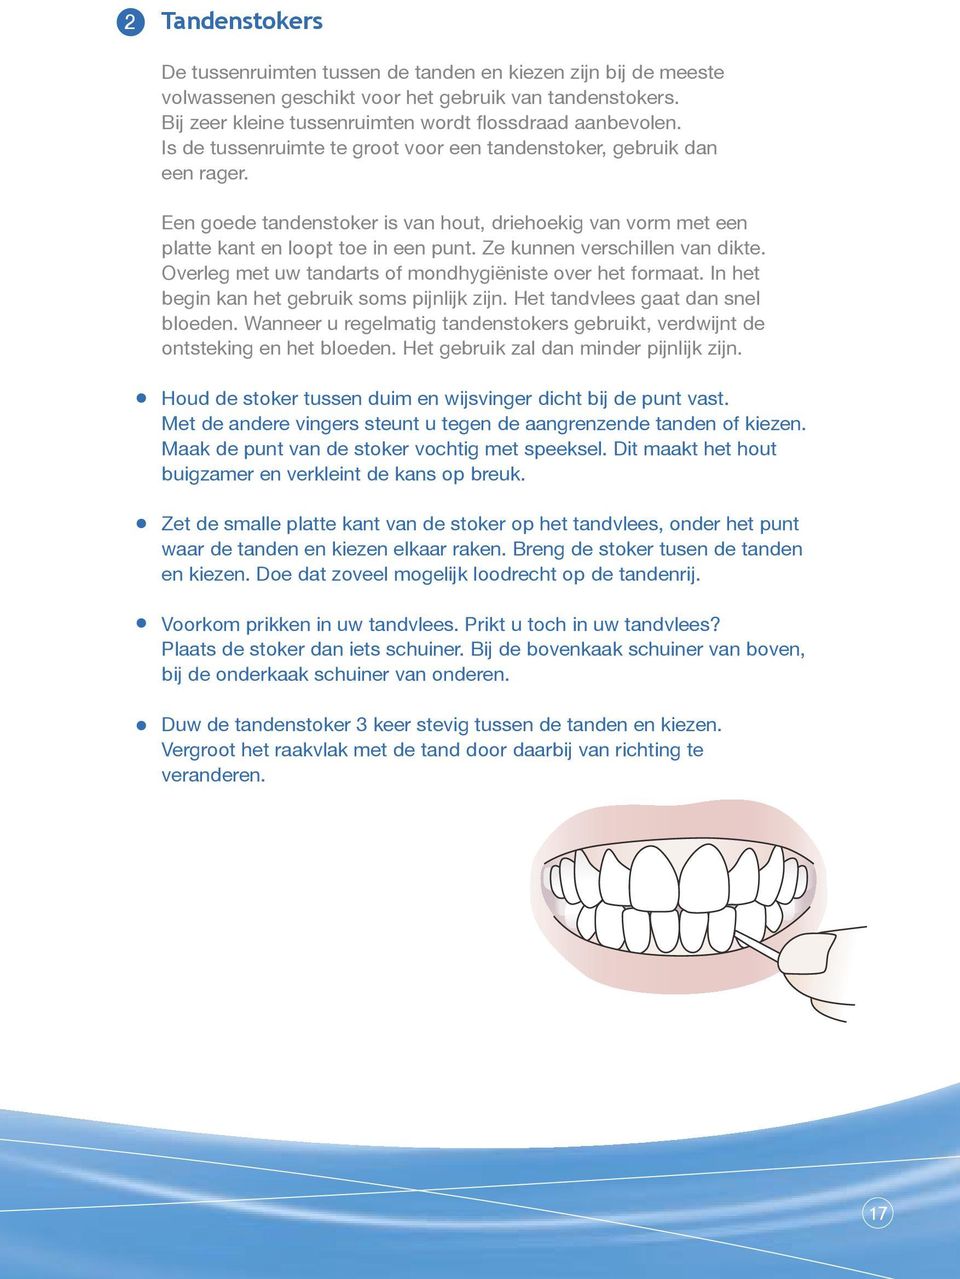 Ze kunnen verschillen van dikte. Overleg met uw tandarts of mondhygiëniste over het formaat. In het begin kan het gebruik soms pijnlijk zijn. Het tandvlees gaat dan snel bloeden.